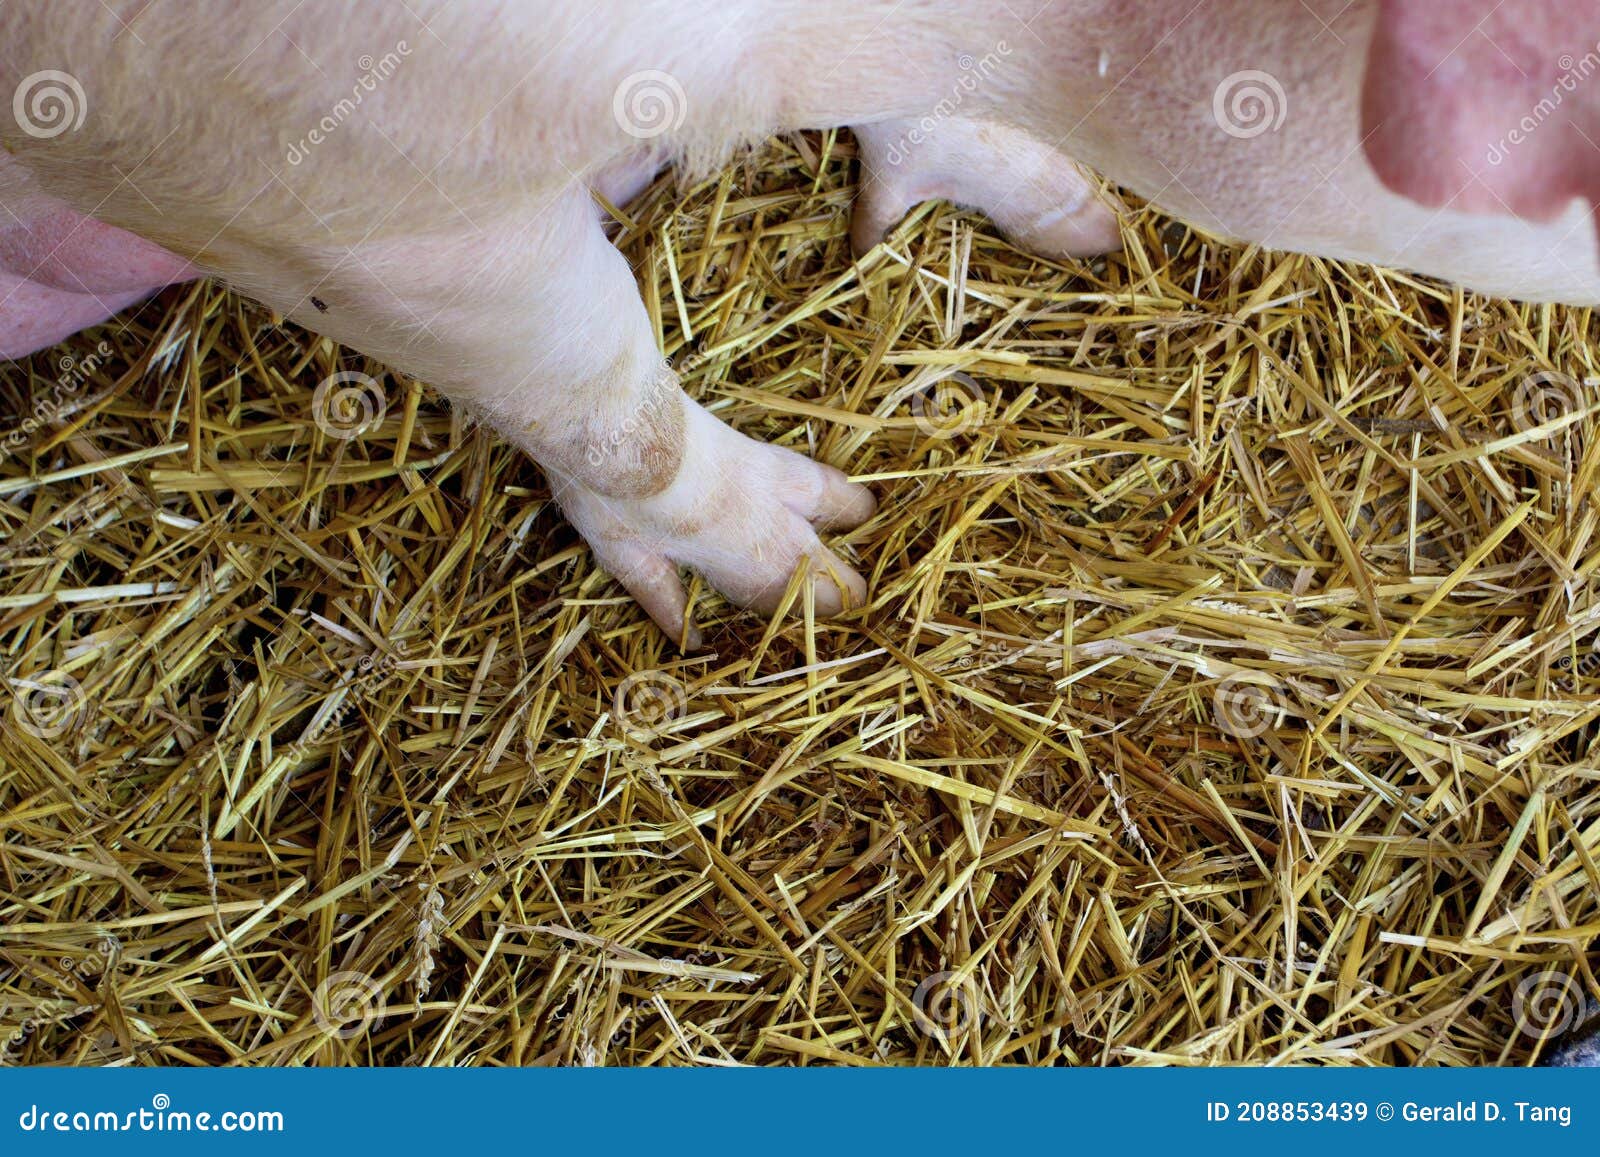 pigs foot 846776'